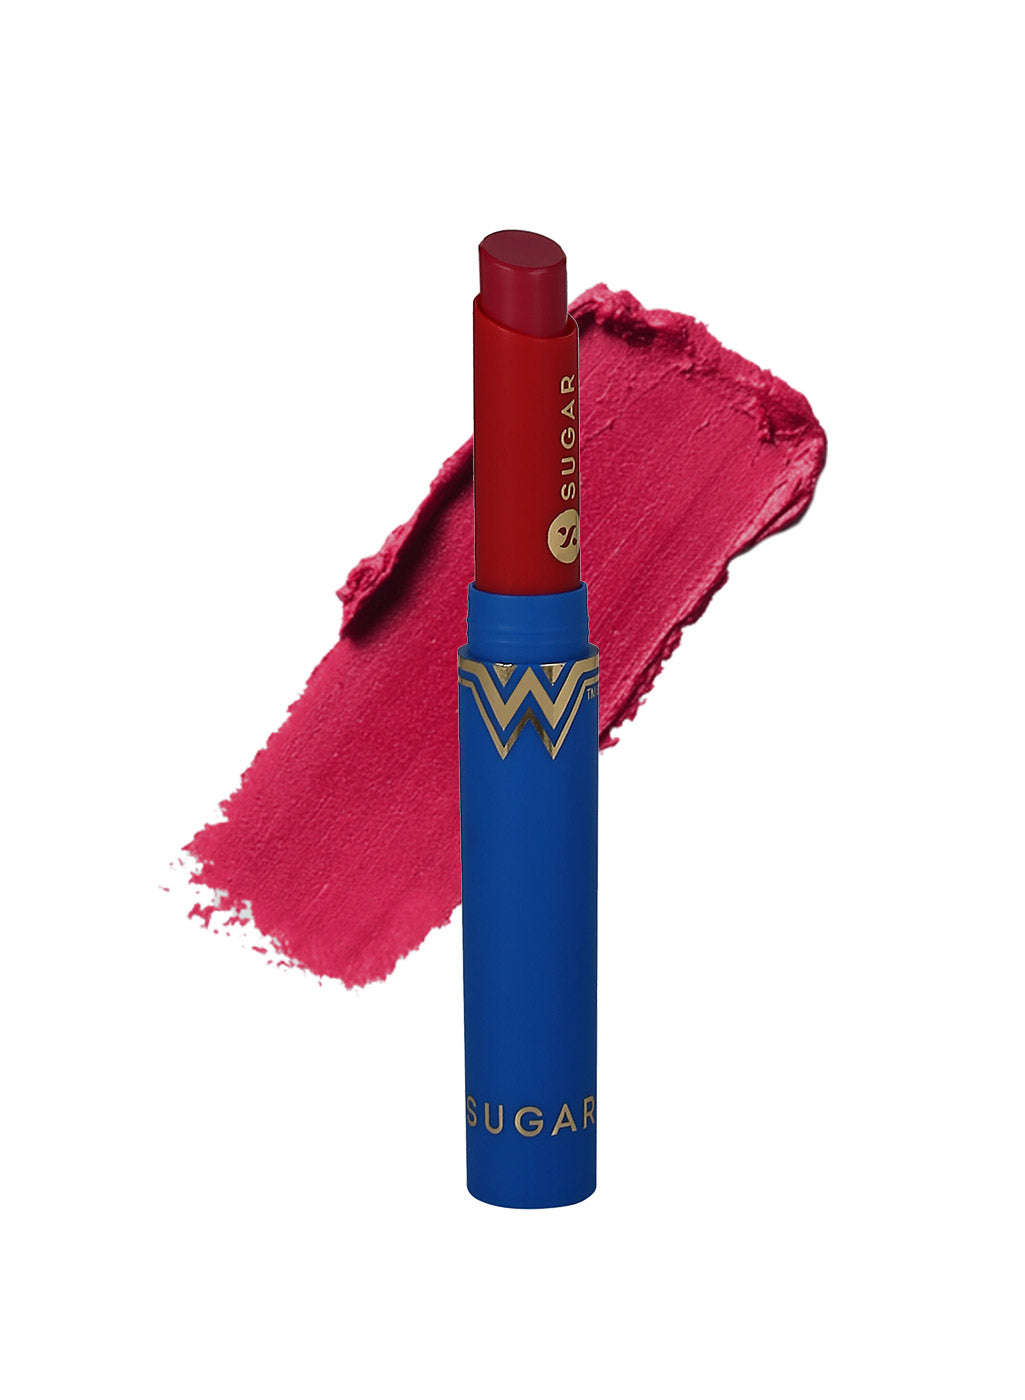 SUGAR Cosmetics Wonder Woman Creamy Matte Lipstick - 02 Amazonian (Deep Rose Pink)